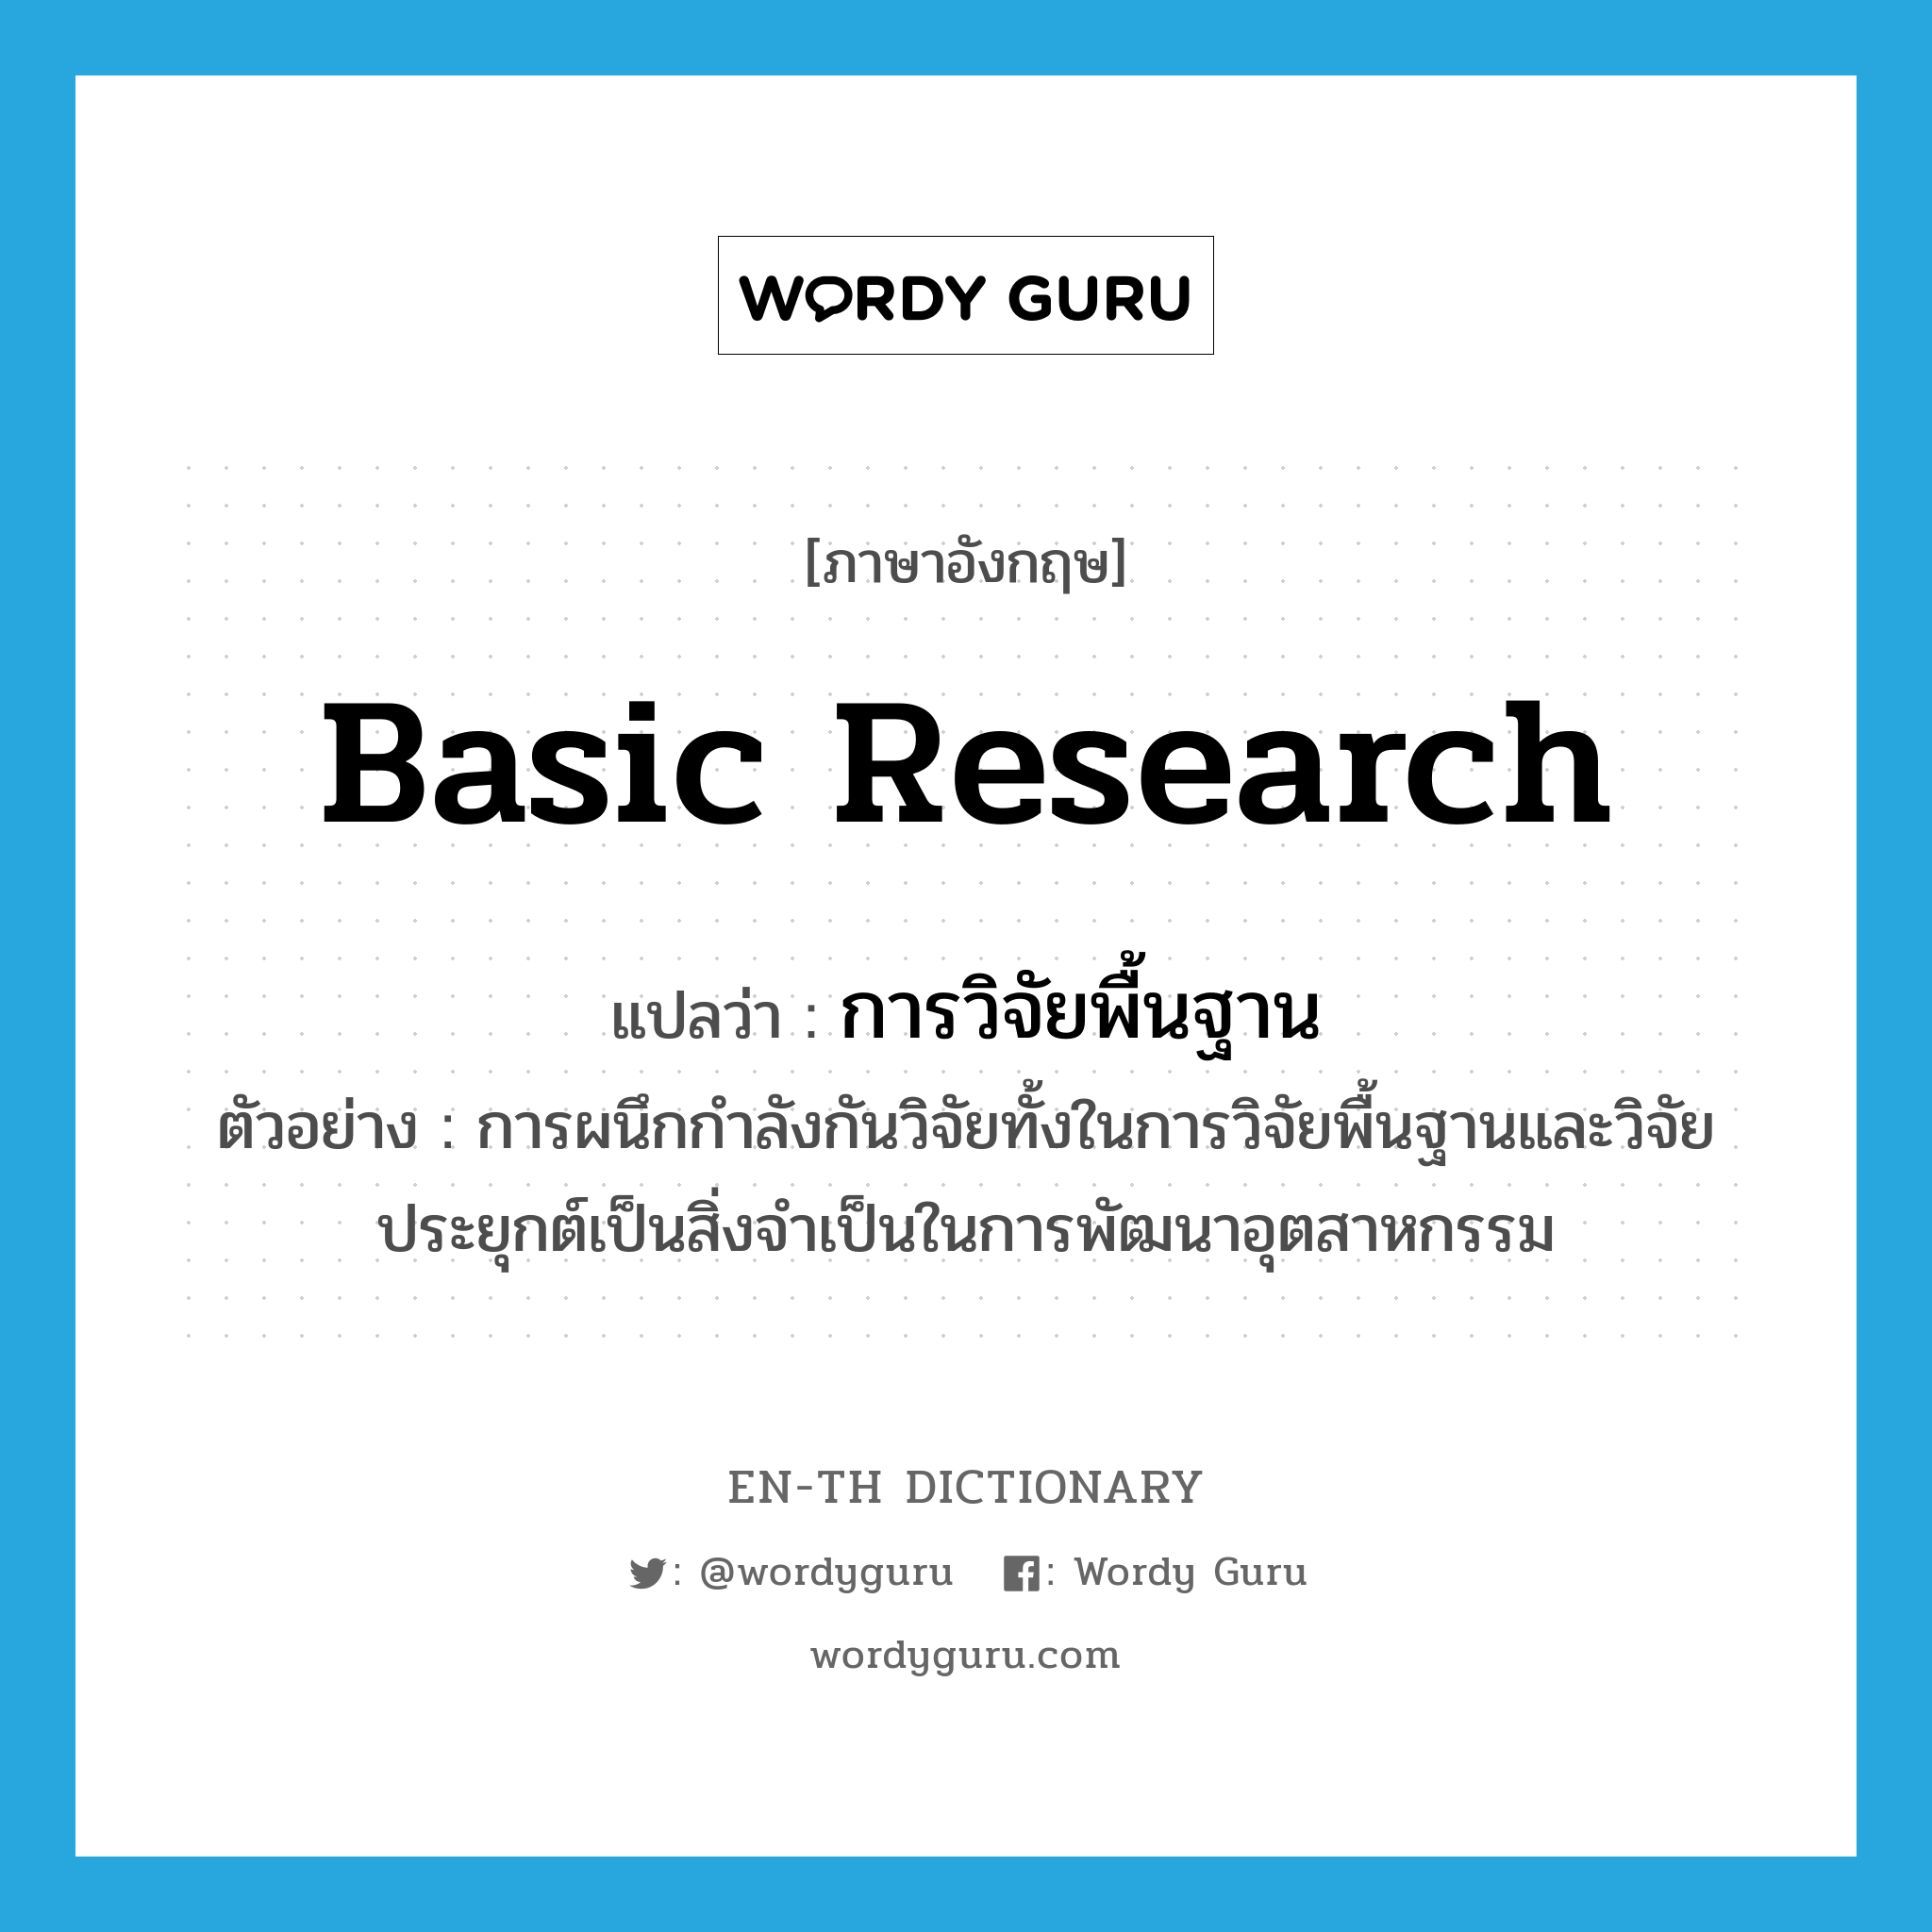 basic research แปลว่า?, คำศัพท์ภาษาอังกฤษ basic research แปลว่า การวิจัยพื้นฐาน ประเภท N ตัวอย่าง การผนึกกำลังกันวิจัยทั้งในการวิจัยพื้นฐานและวิจัยประยุกต์เป็นสิ่งจำเป็นในการพัฒนาอุตสาหกรรม หมวด N